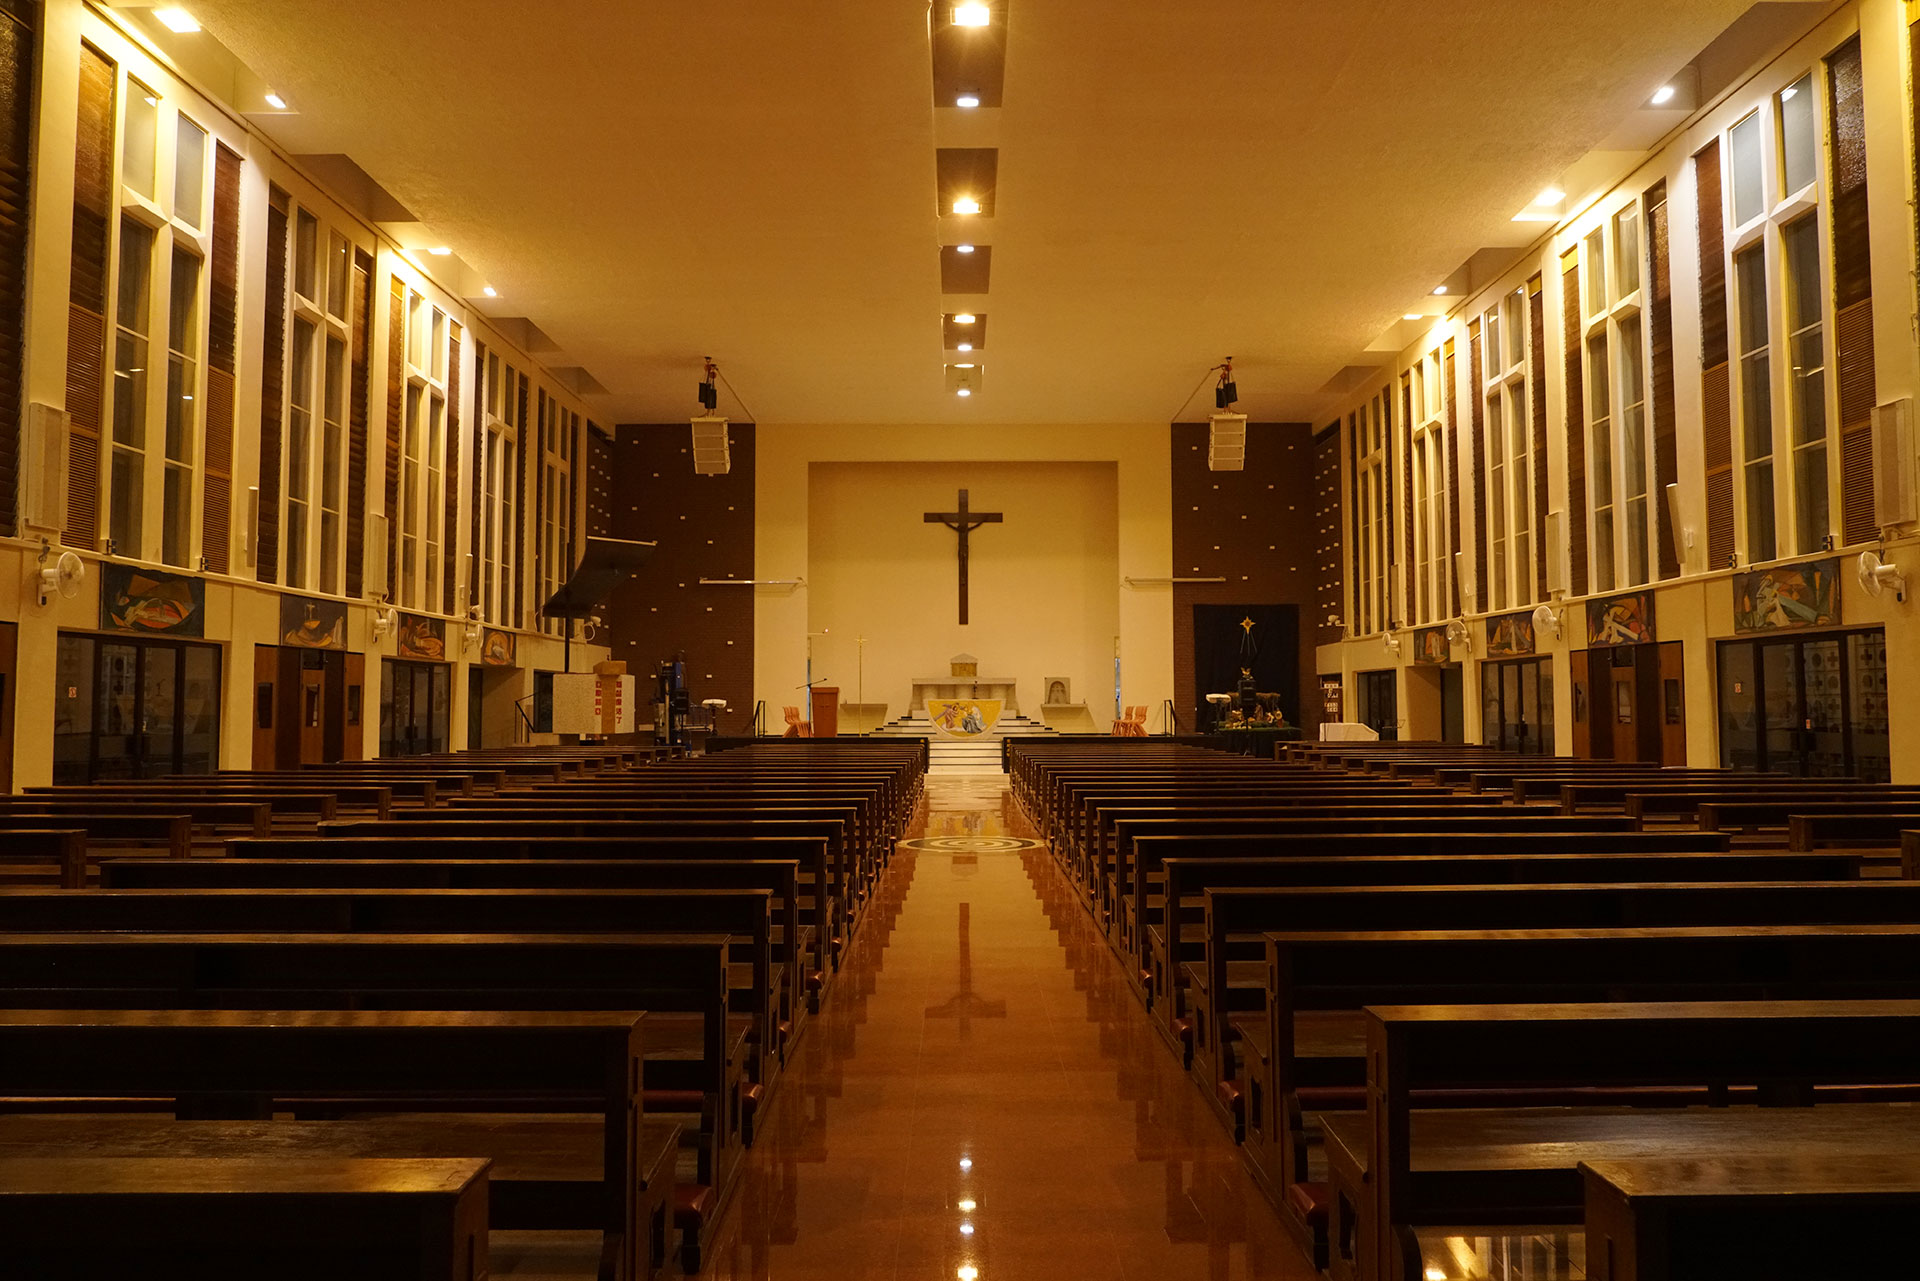 St. Ignatius Chapel (Hong Kong)